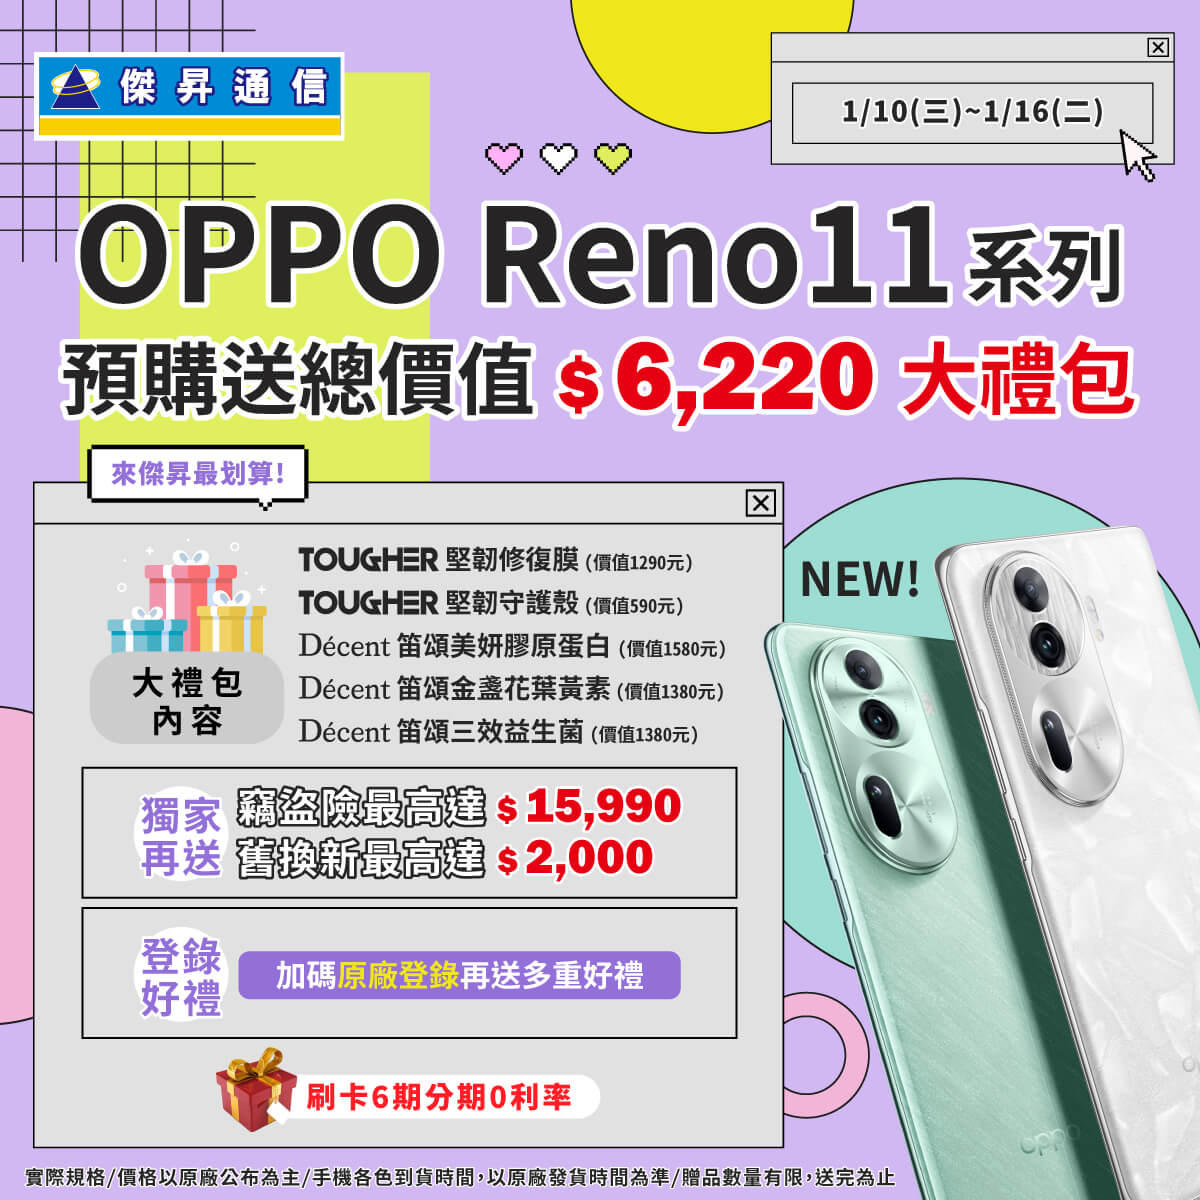 【新機預購】OPPO Reno11 Pro、Reno11｜來傑昇預購送總價值 6,220元豪華大禮包+竊盜險+舊換新優惠